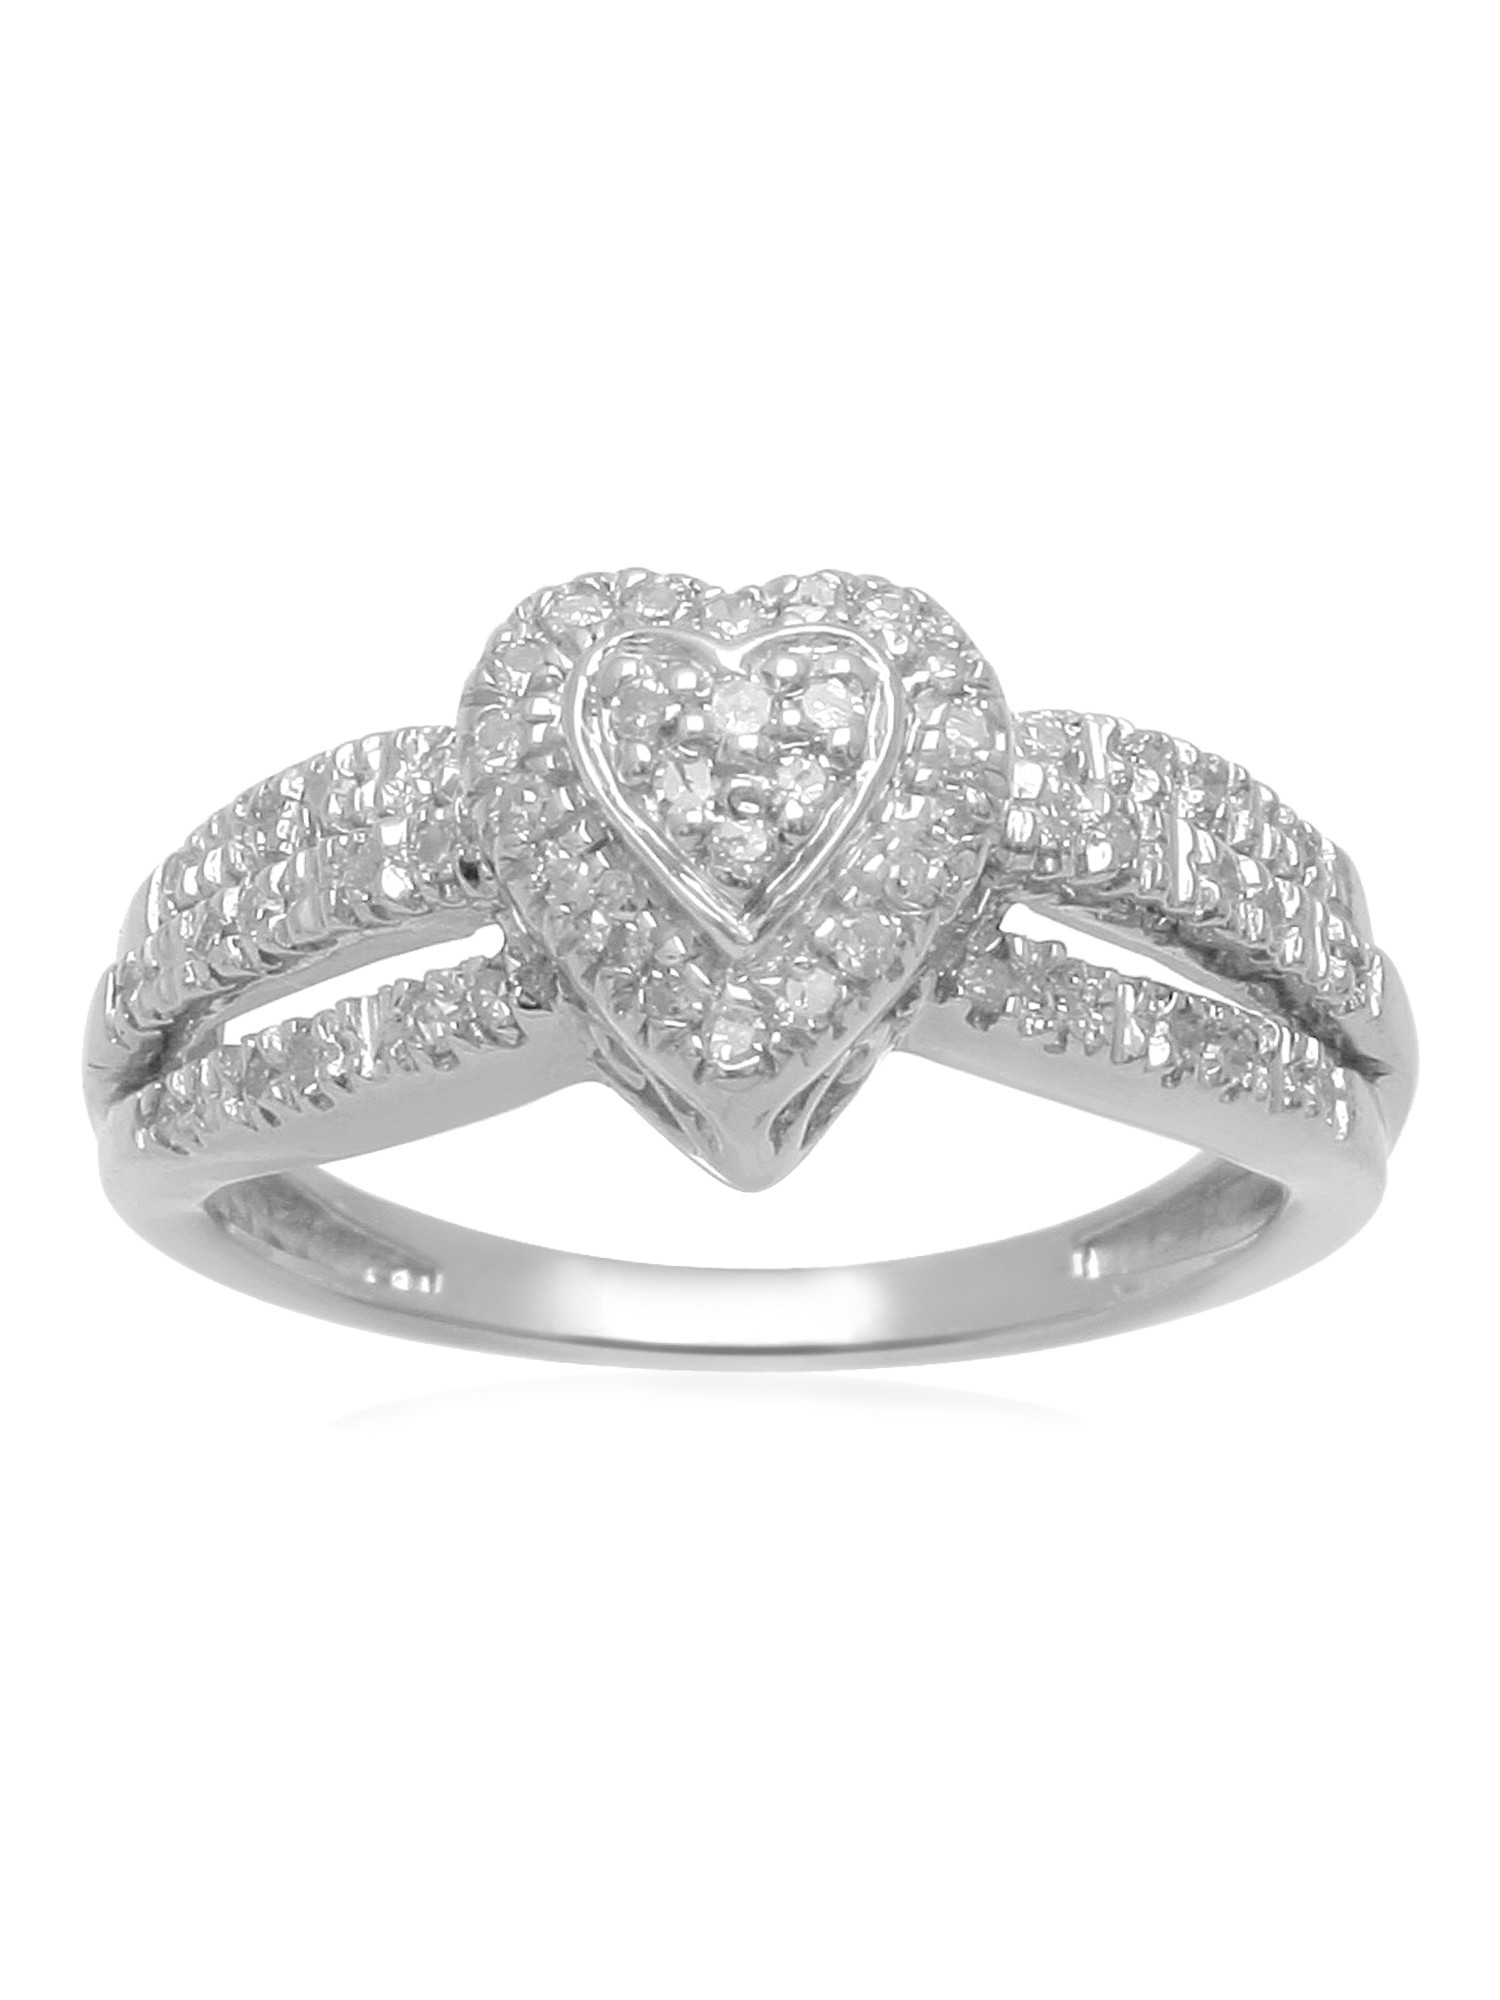 Diamond Rings At Walmart
 1 7 Carat T W Diamond Sterling Silver Heart Shape